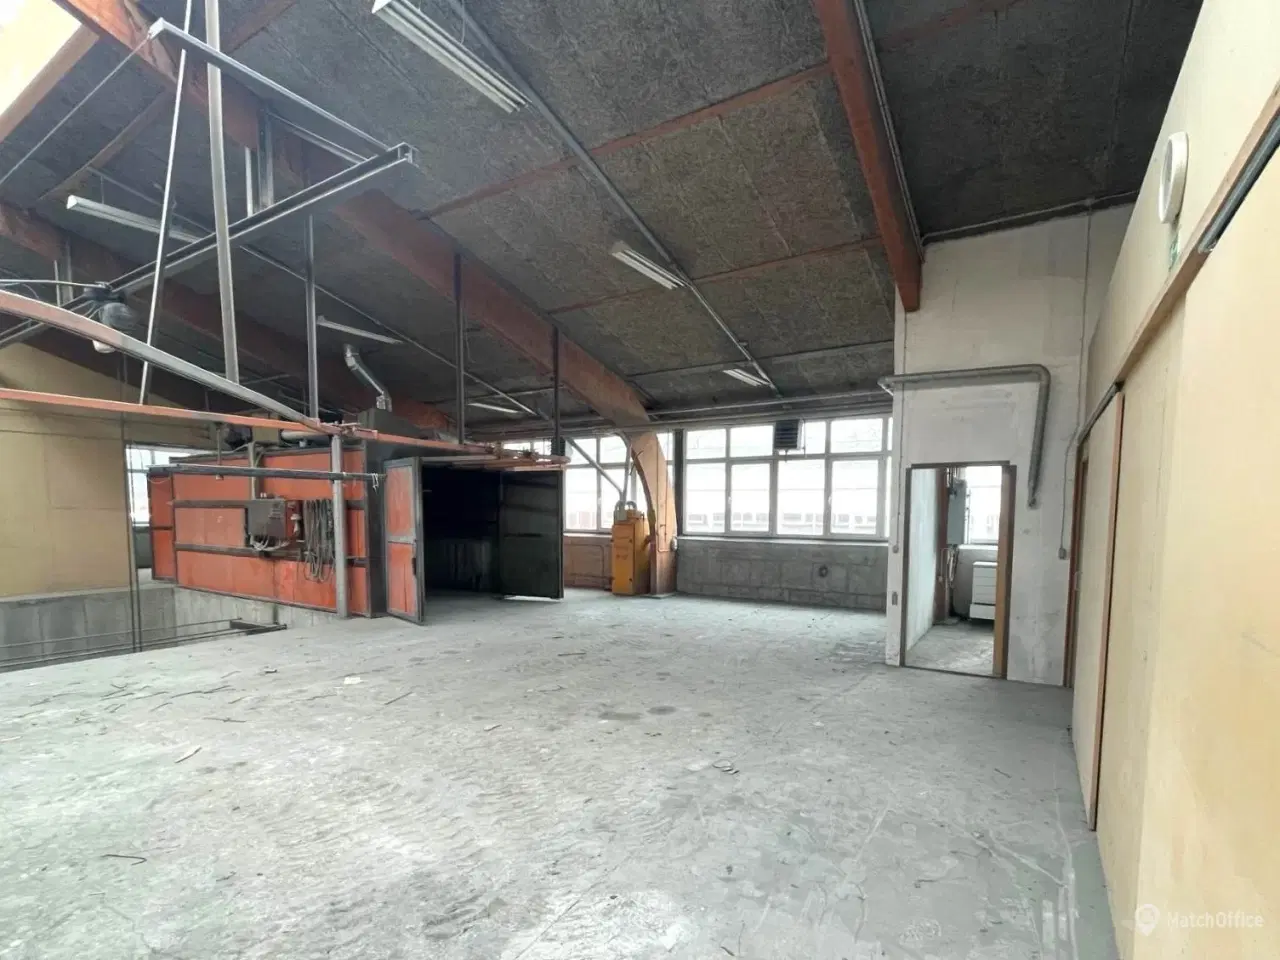 Billede 2 - Præsentabelt højloftet lager/produktionslejemål på i alt 517 m2